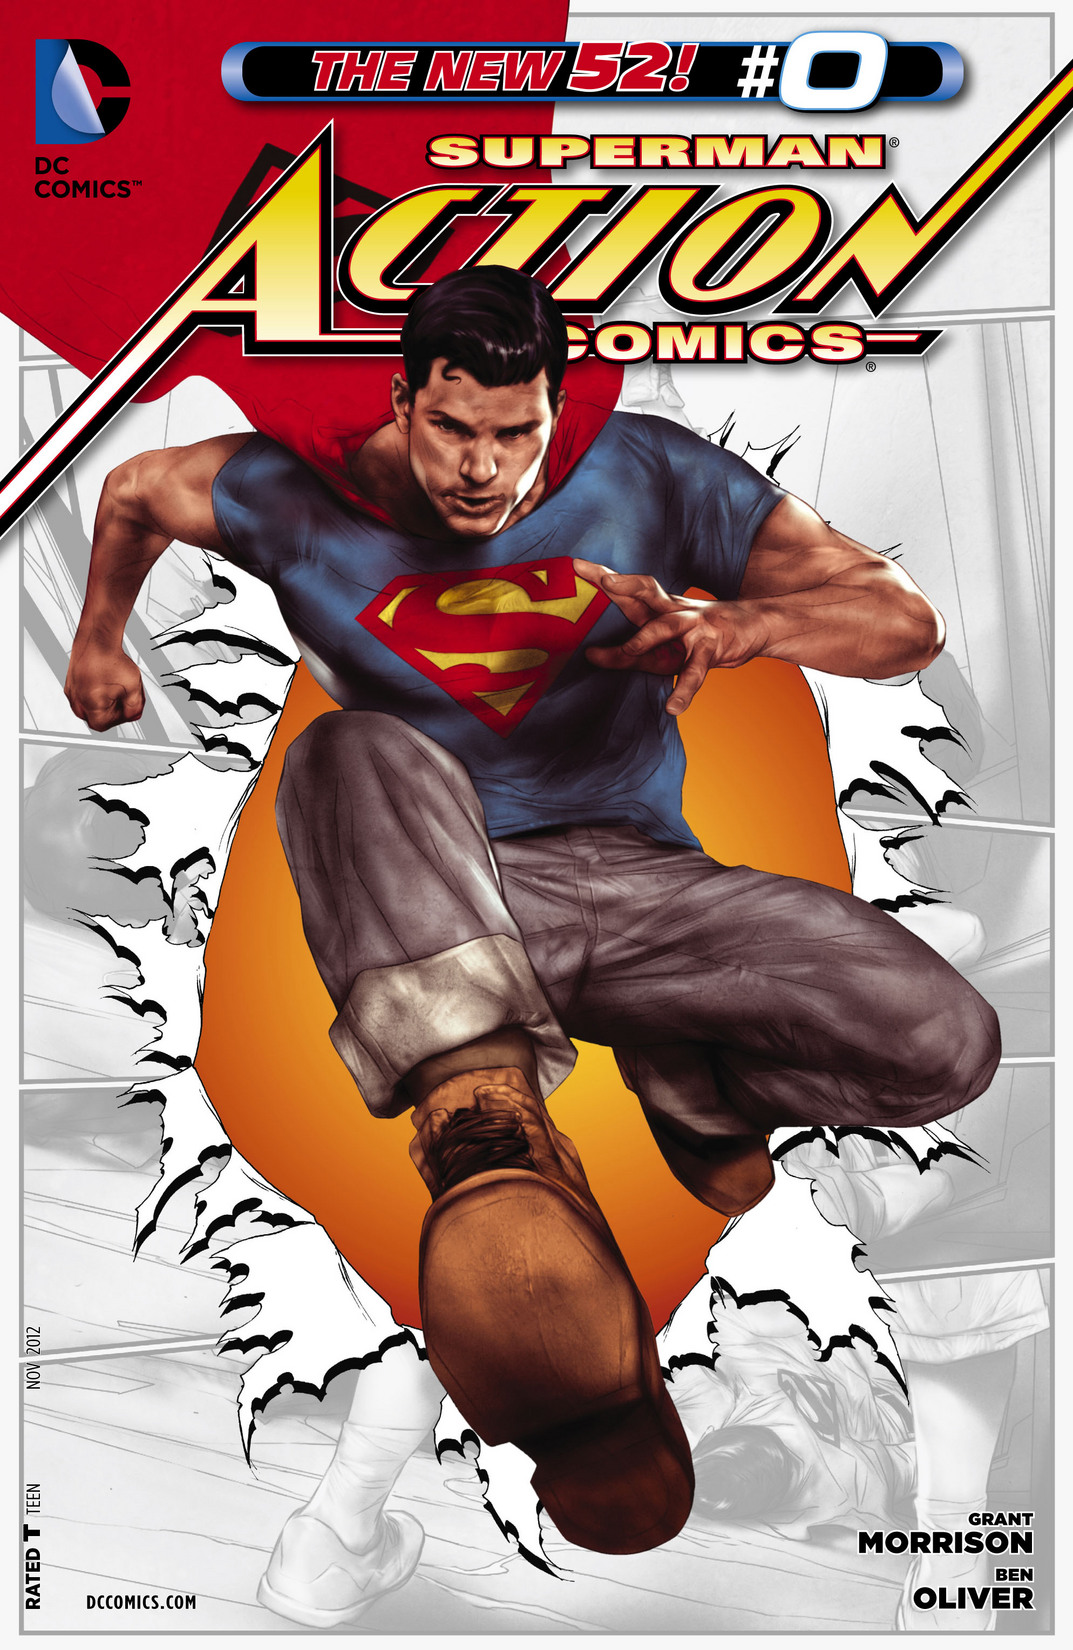 Action Comics Vol. 2 #0